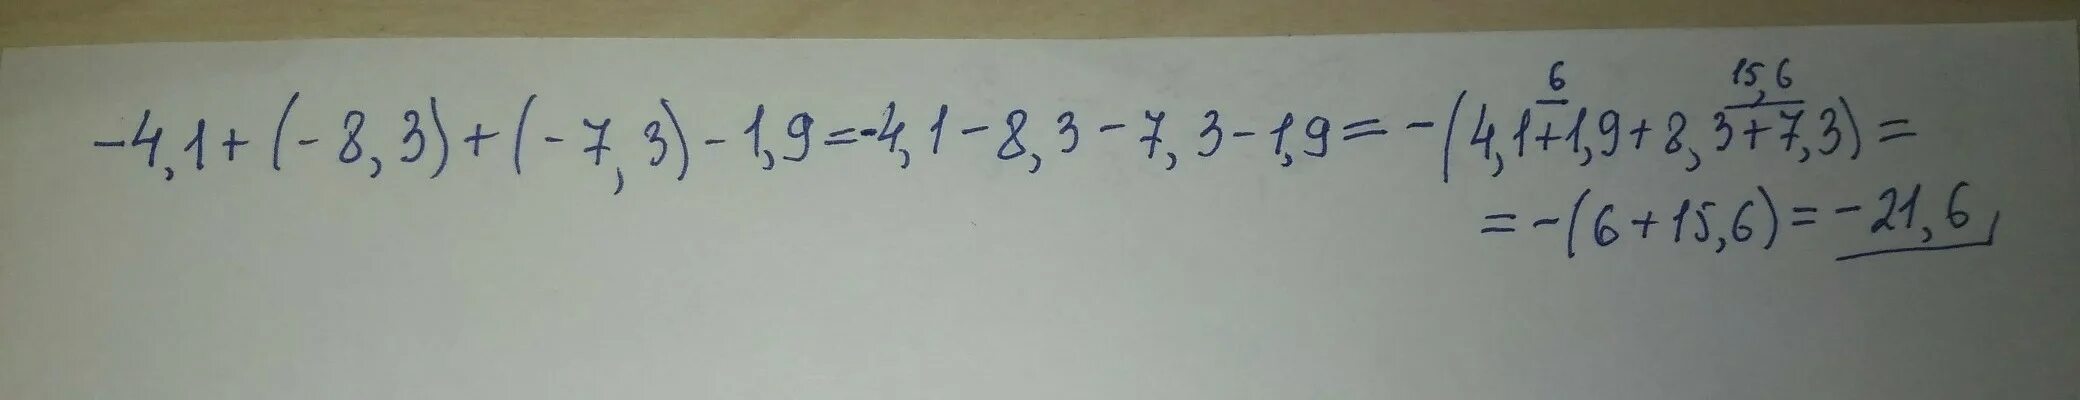 1.9 7.3. -4,1+(-8,3)-(-7,3)-(+1,9). 3*1+(-3)/1+(-3). Решение (-1+)(4.8 - 12) + 3. 3,1+(-4,72)+(-8,12)-(-0.96).